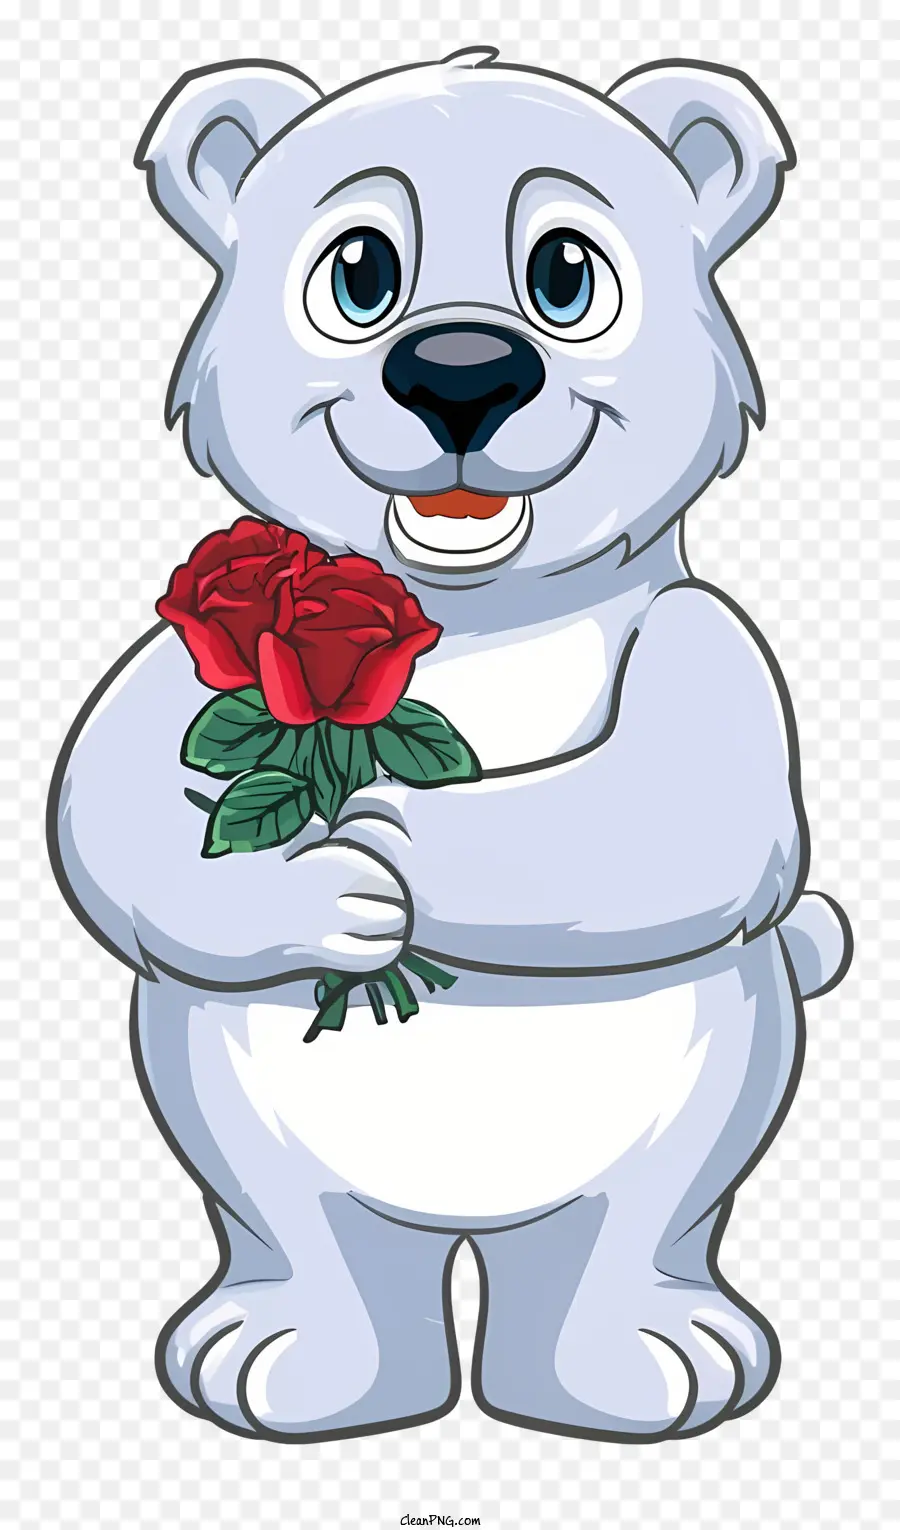 rosa rossa - Orso polare con rosa rossa in mano